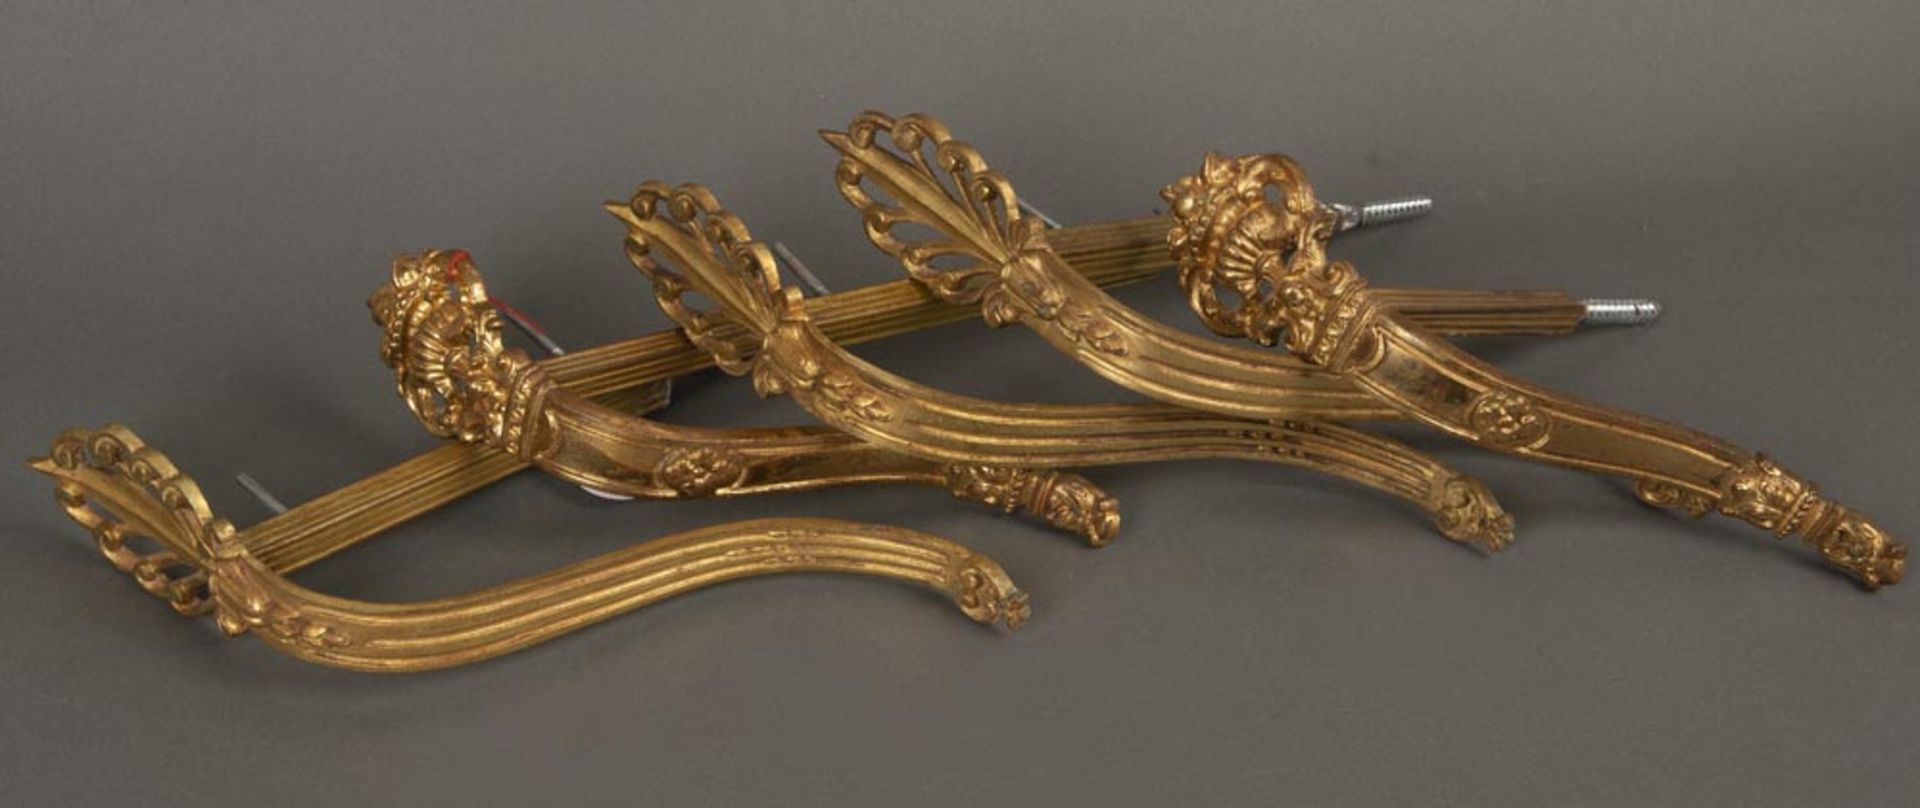 Fünf Vorhängehalterungen. Frankreich um 1900. Bronze, vergoldet, H=24 bis 29 cm, T=15 bis 18 cm.Fünf